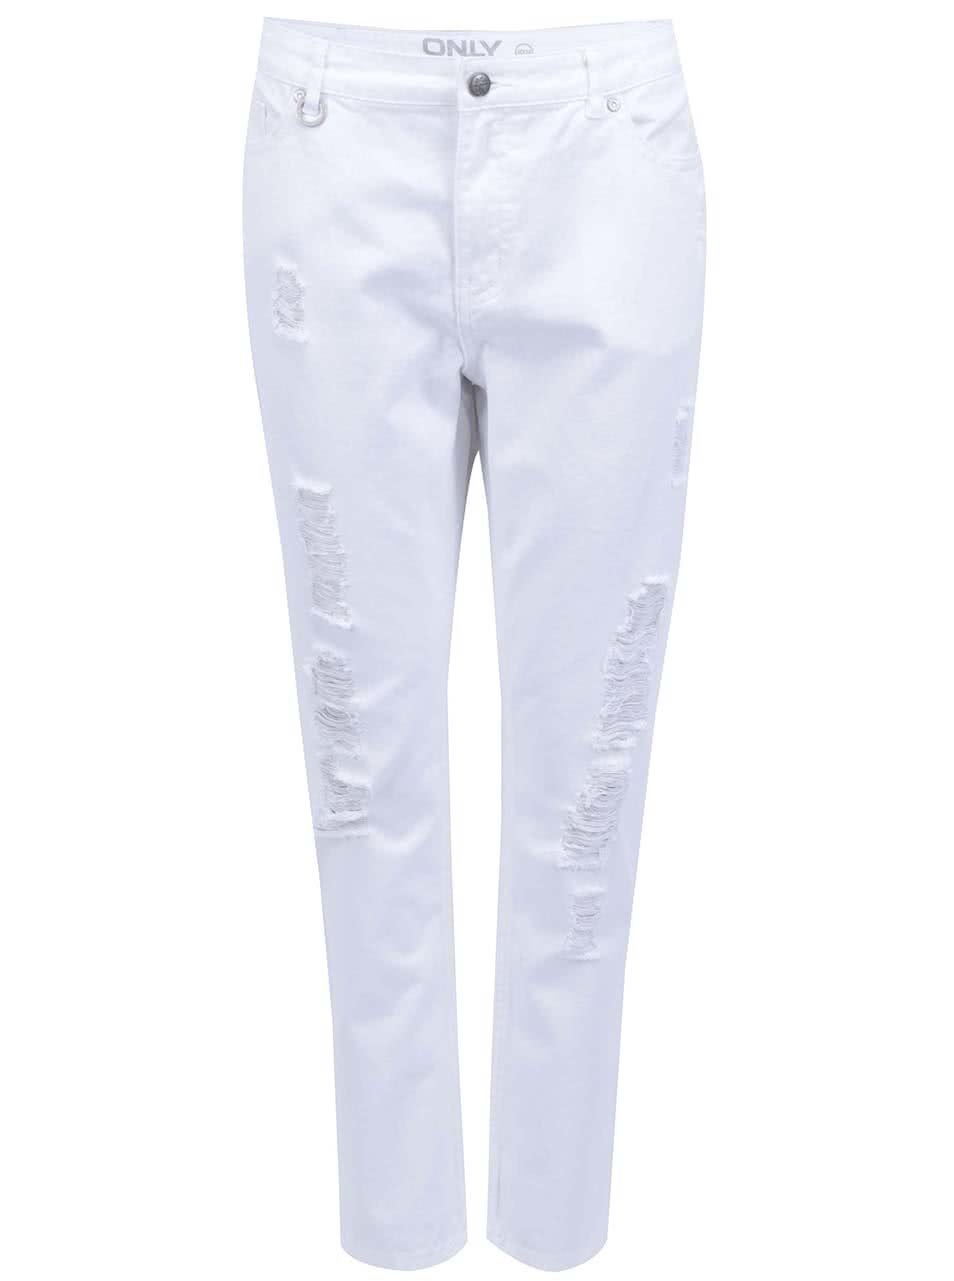 Bílé osminkové kalhoty s potrhaným efektem ONLY Solid